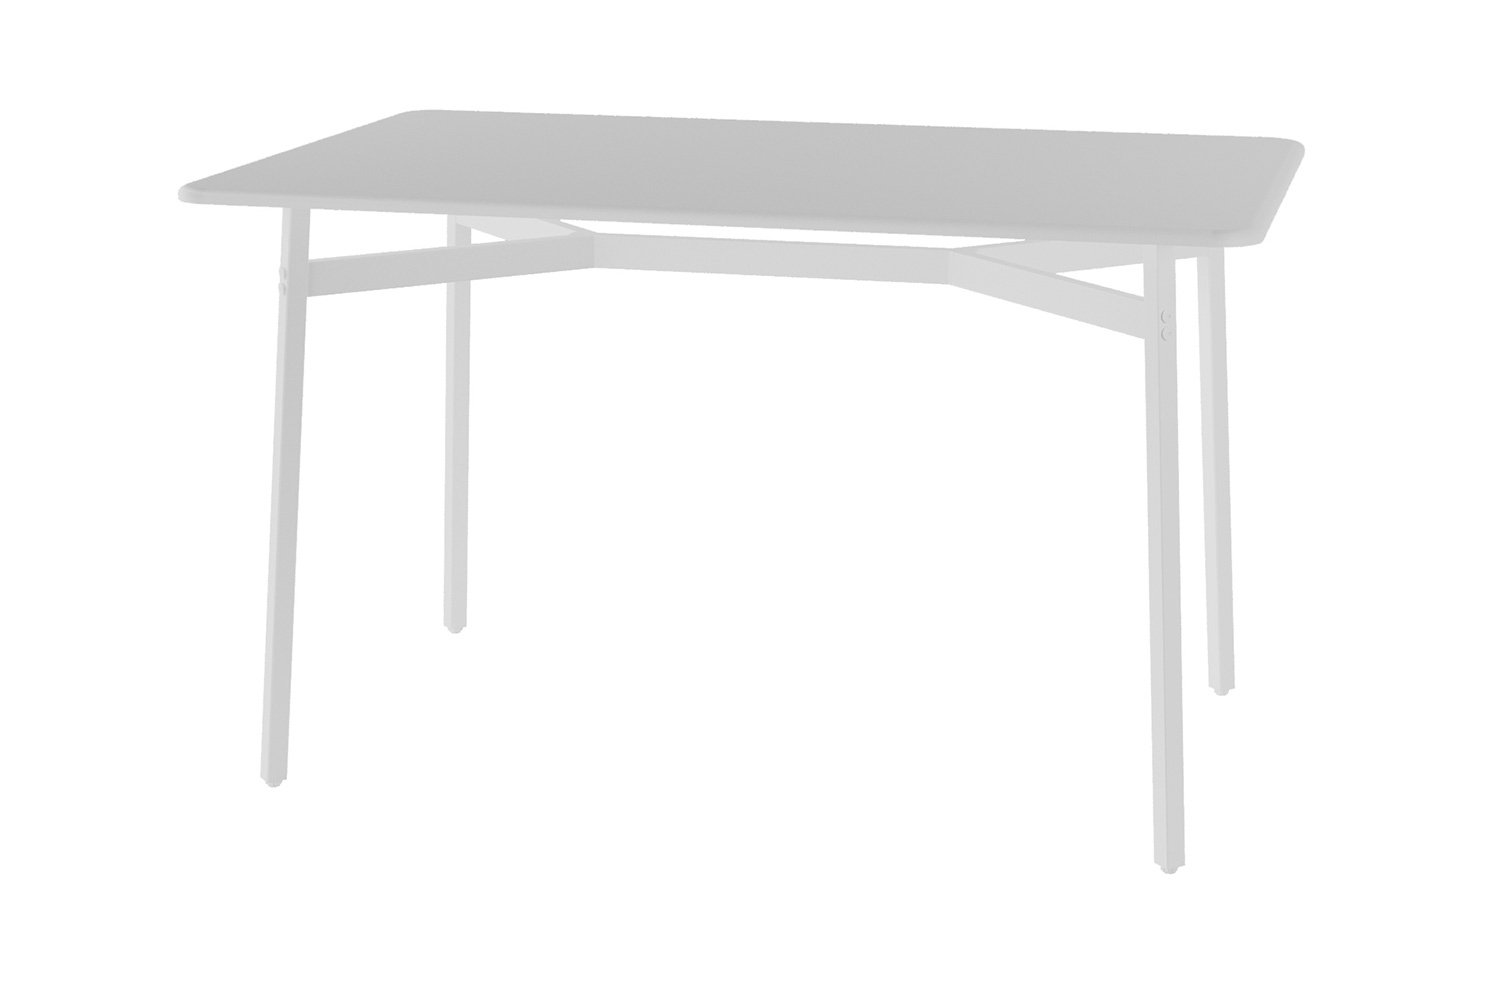 Lifetime Blow Mould Folding Table 183cm